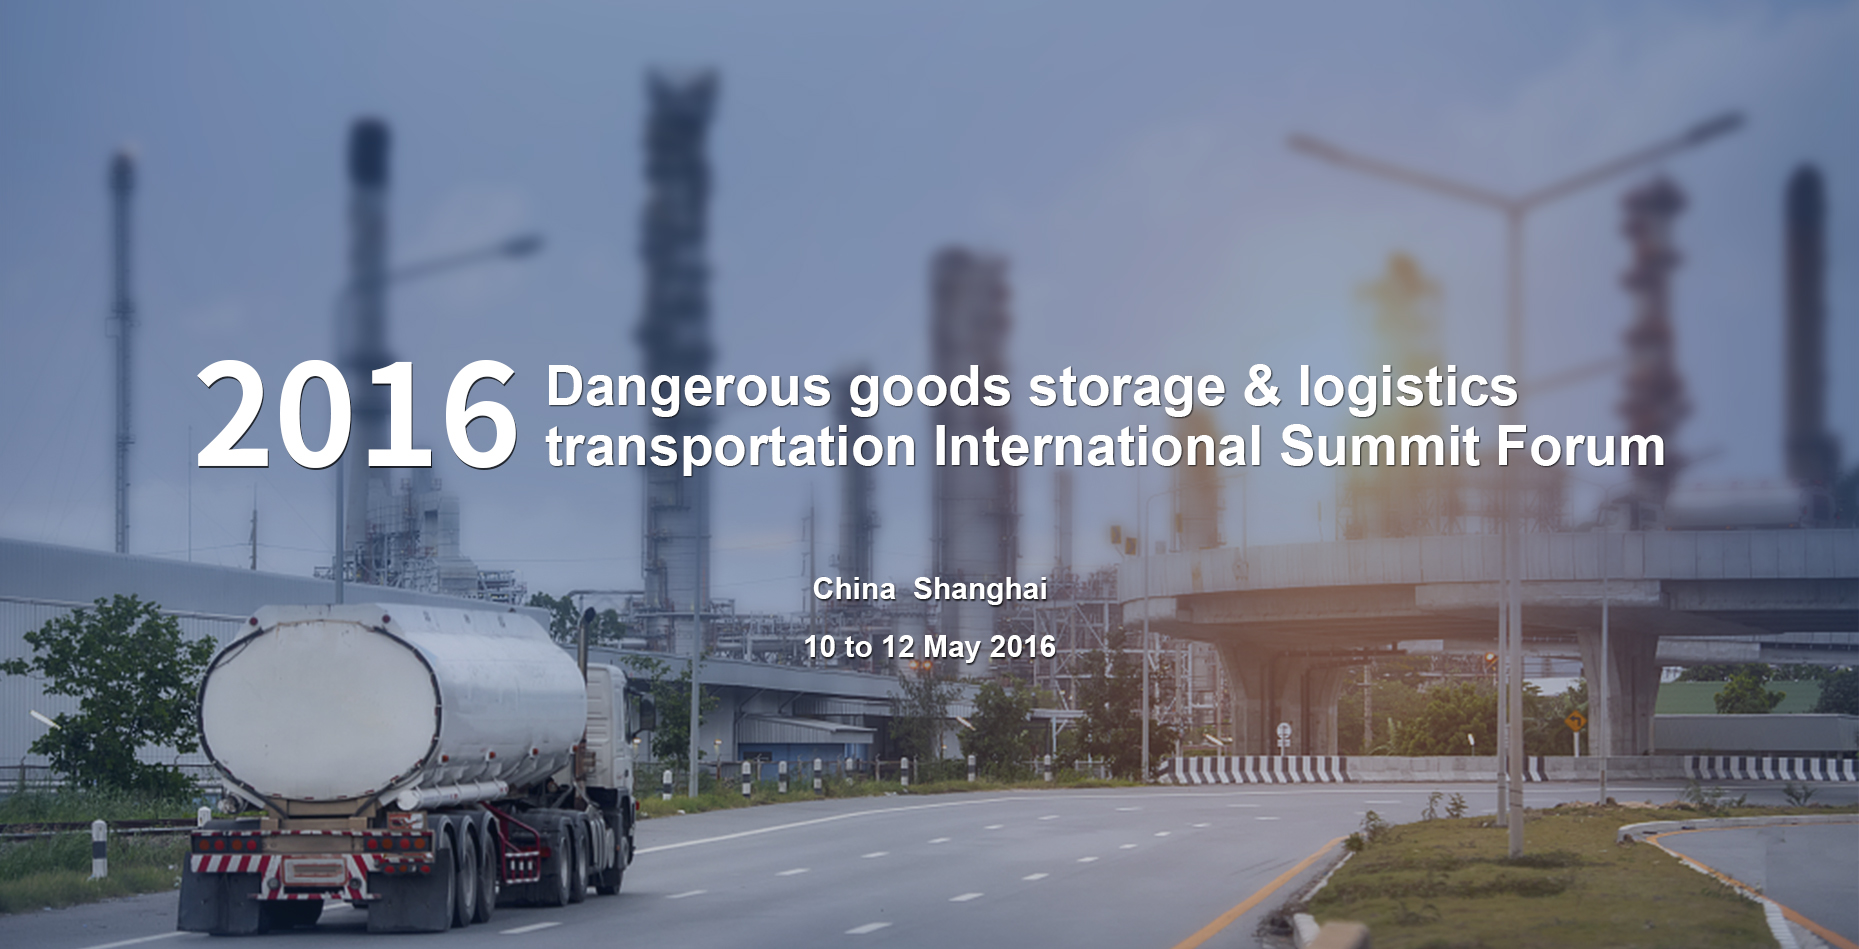 2016 third dangerous goods storage & road transport International Summit Forum